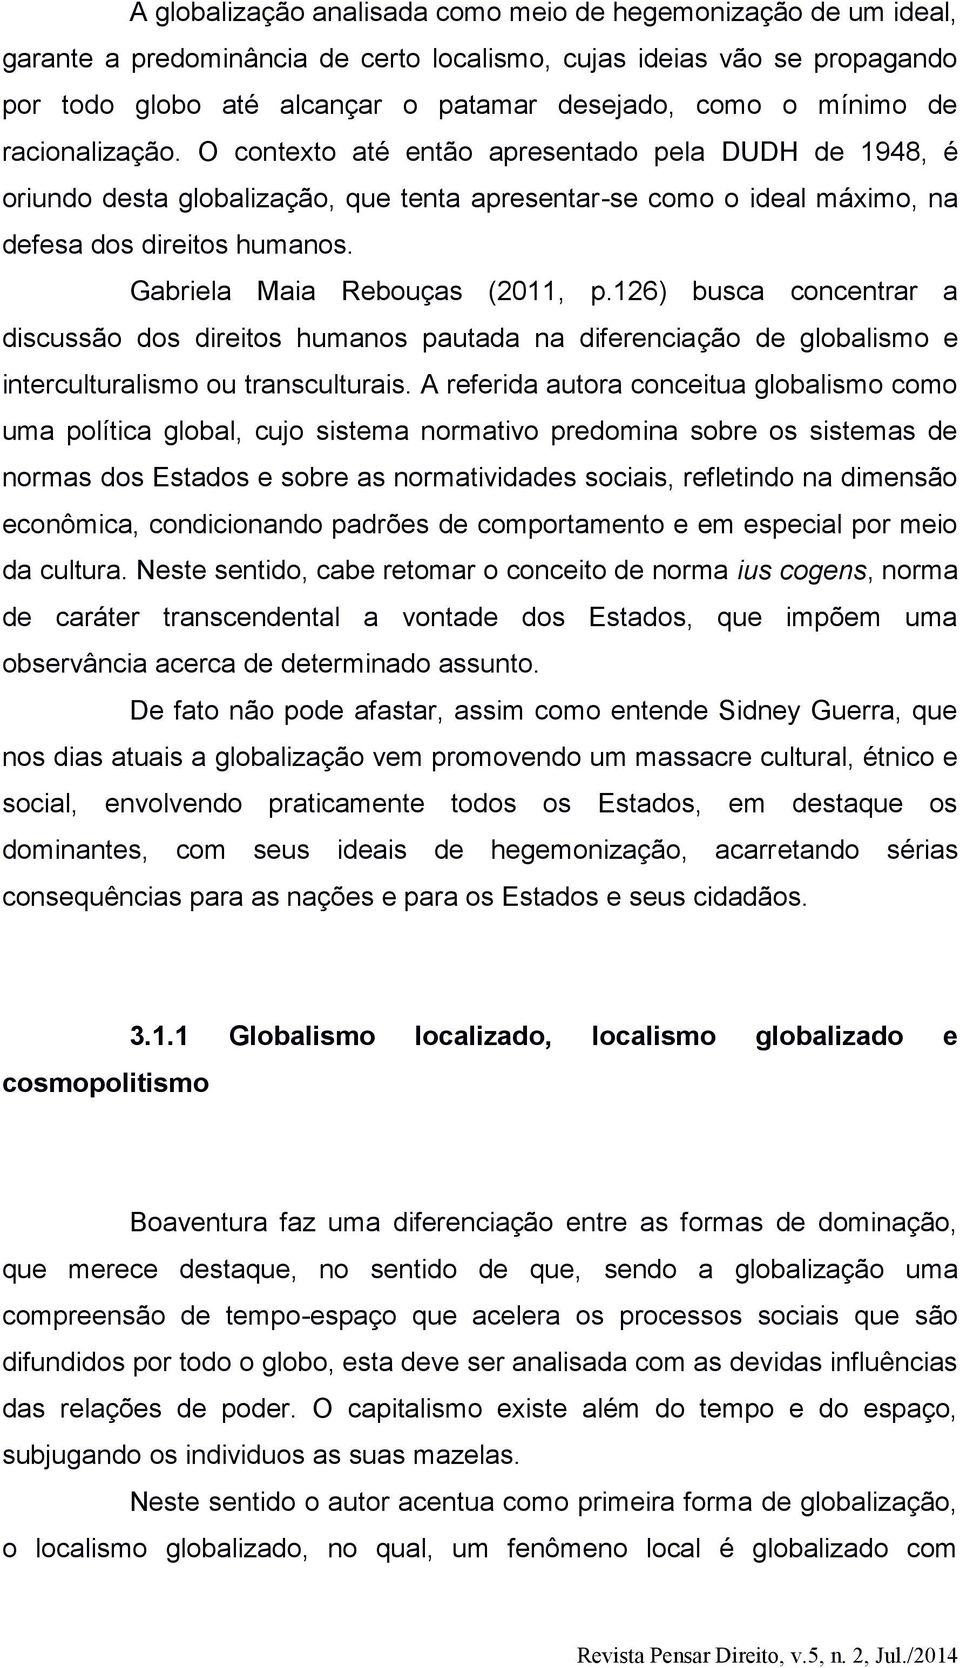 Gabriela Maia Rebouças (2011, p.126) busca concentrar a discussão dos direitos humanos pautada na diferenciação de globalismo e interculturalismo ou transculturais.